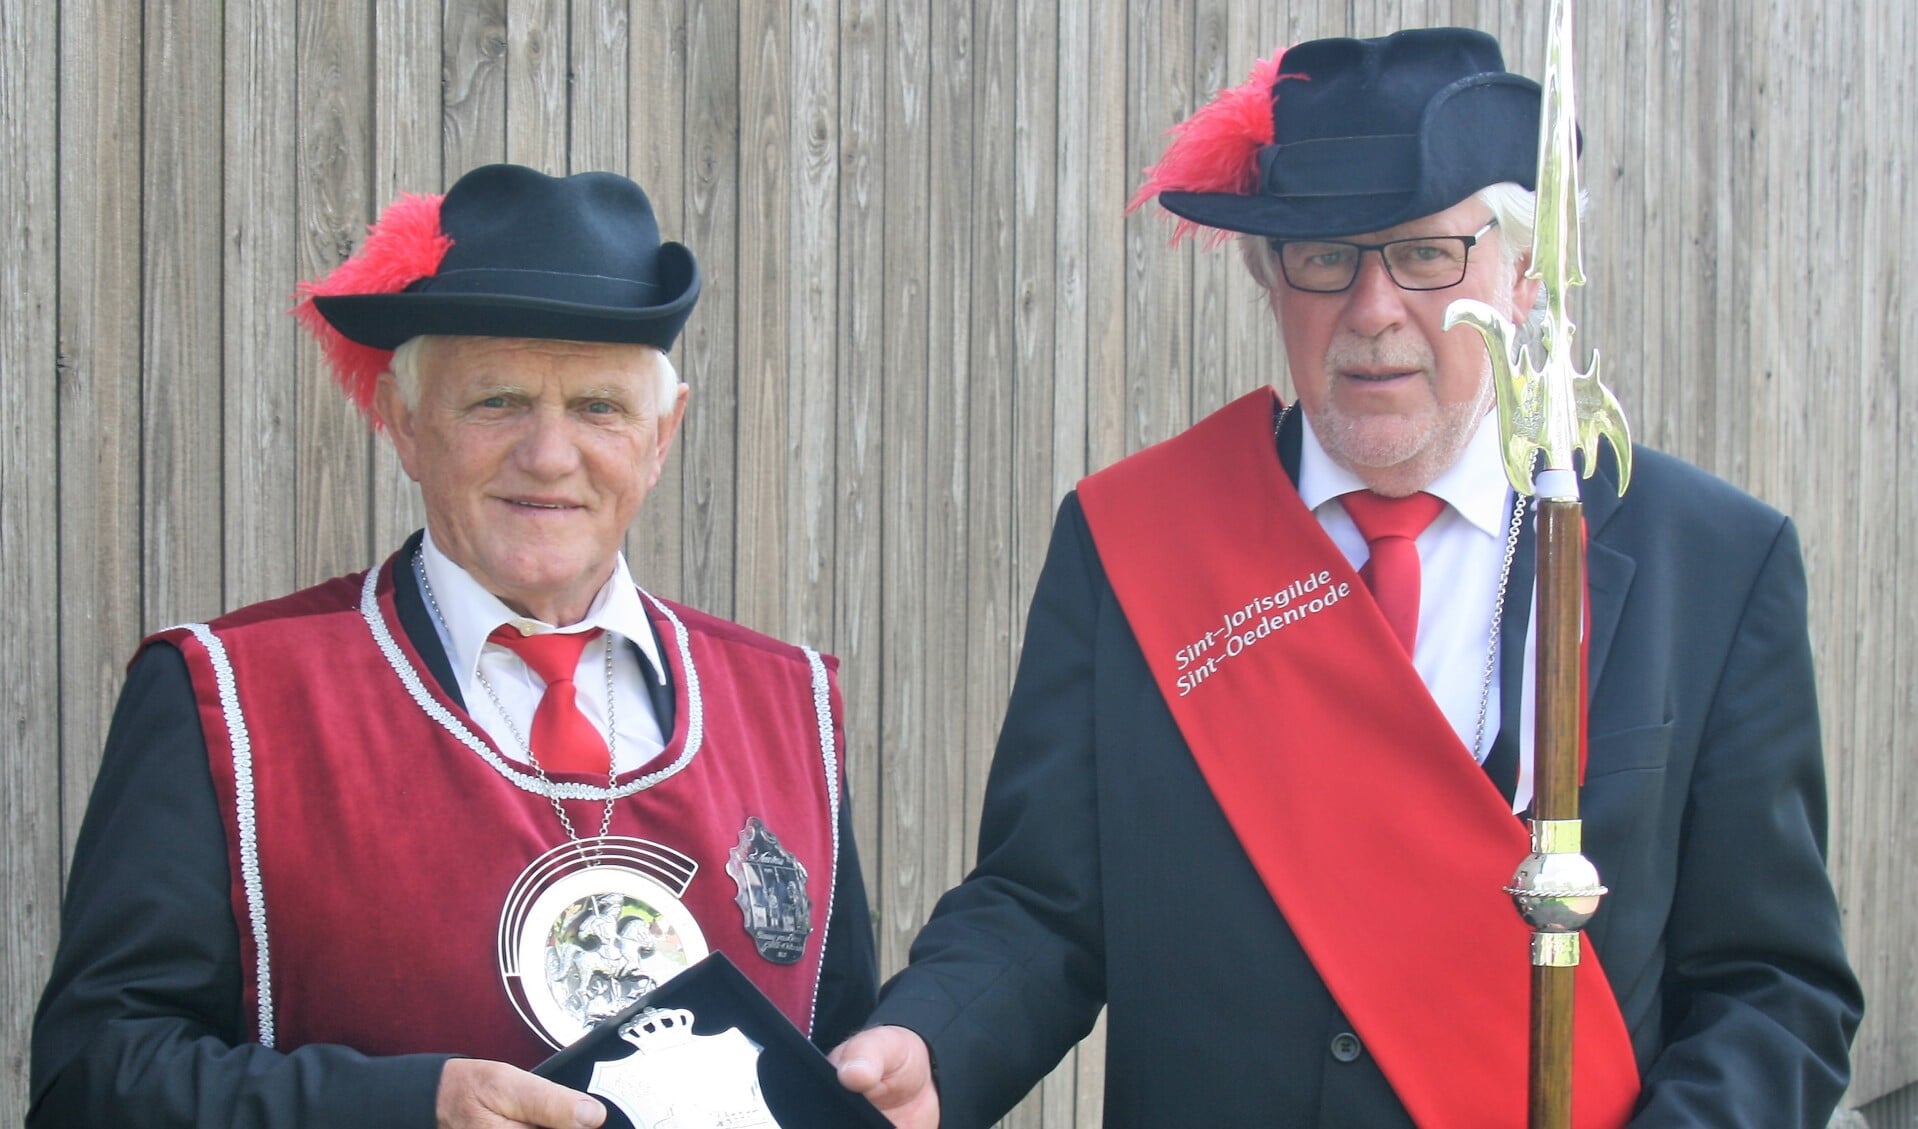 Gildekoning Piet van Heesch (l) schenkt zijn koningsschild aan hoofdman Henk Quinten.